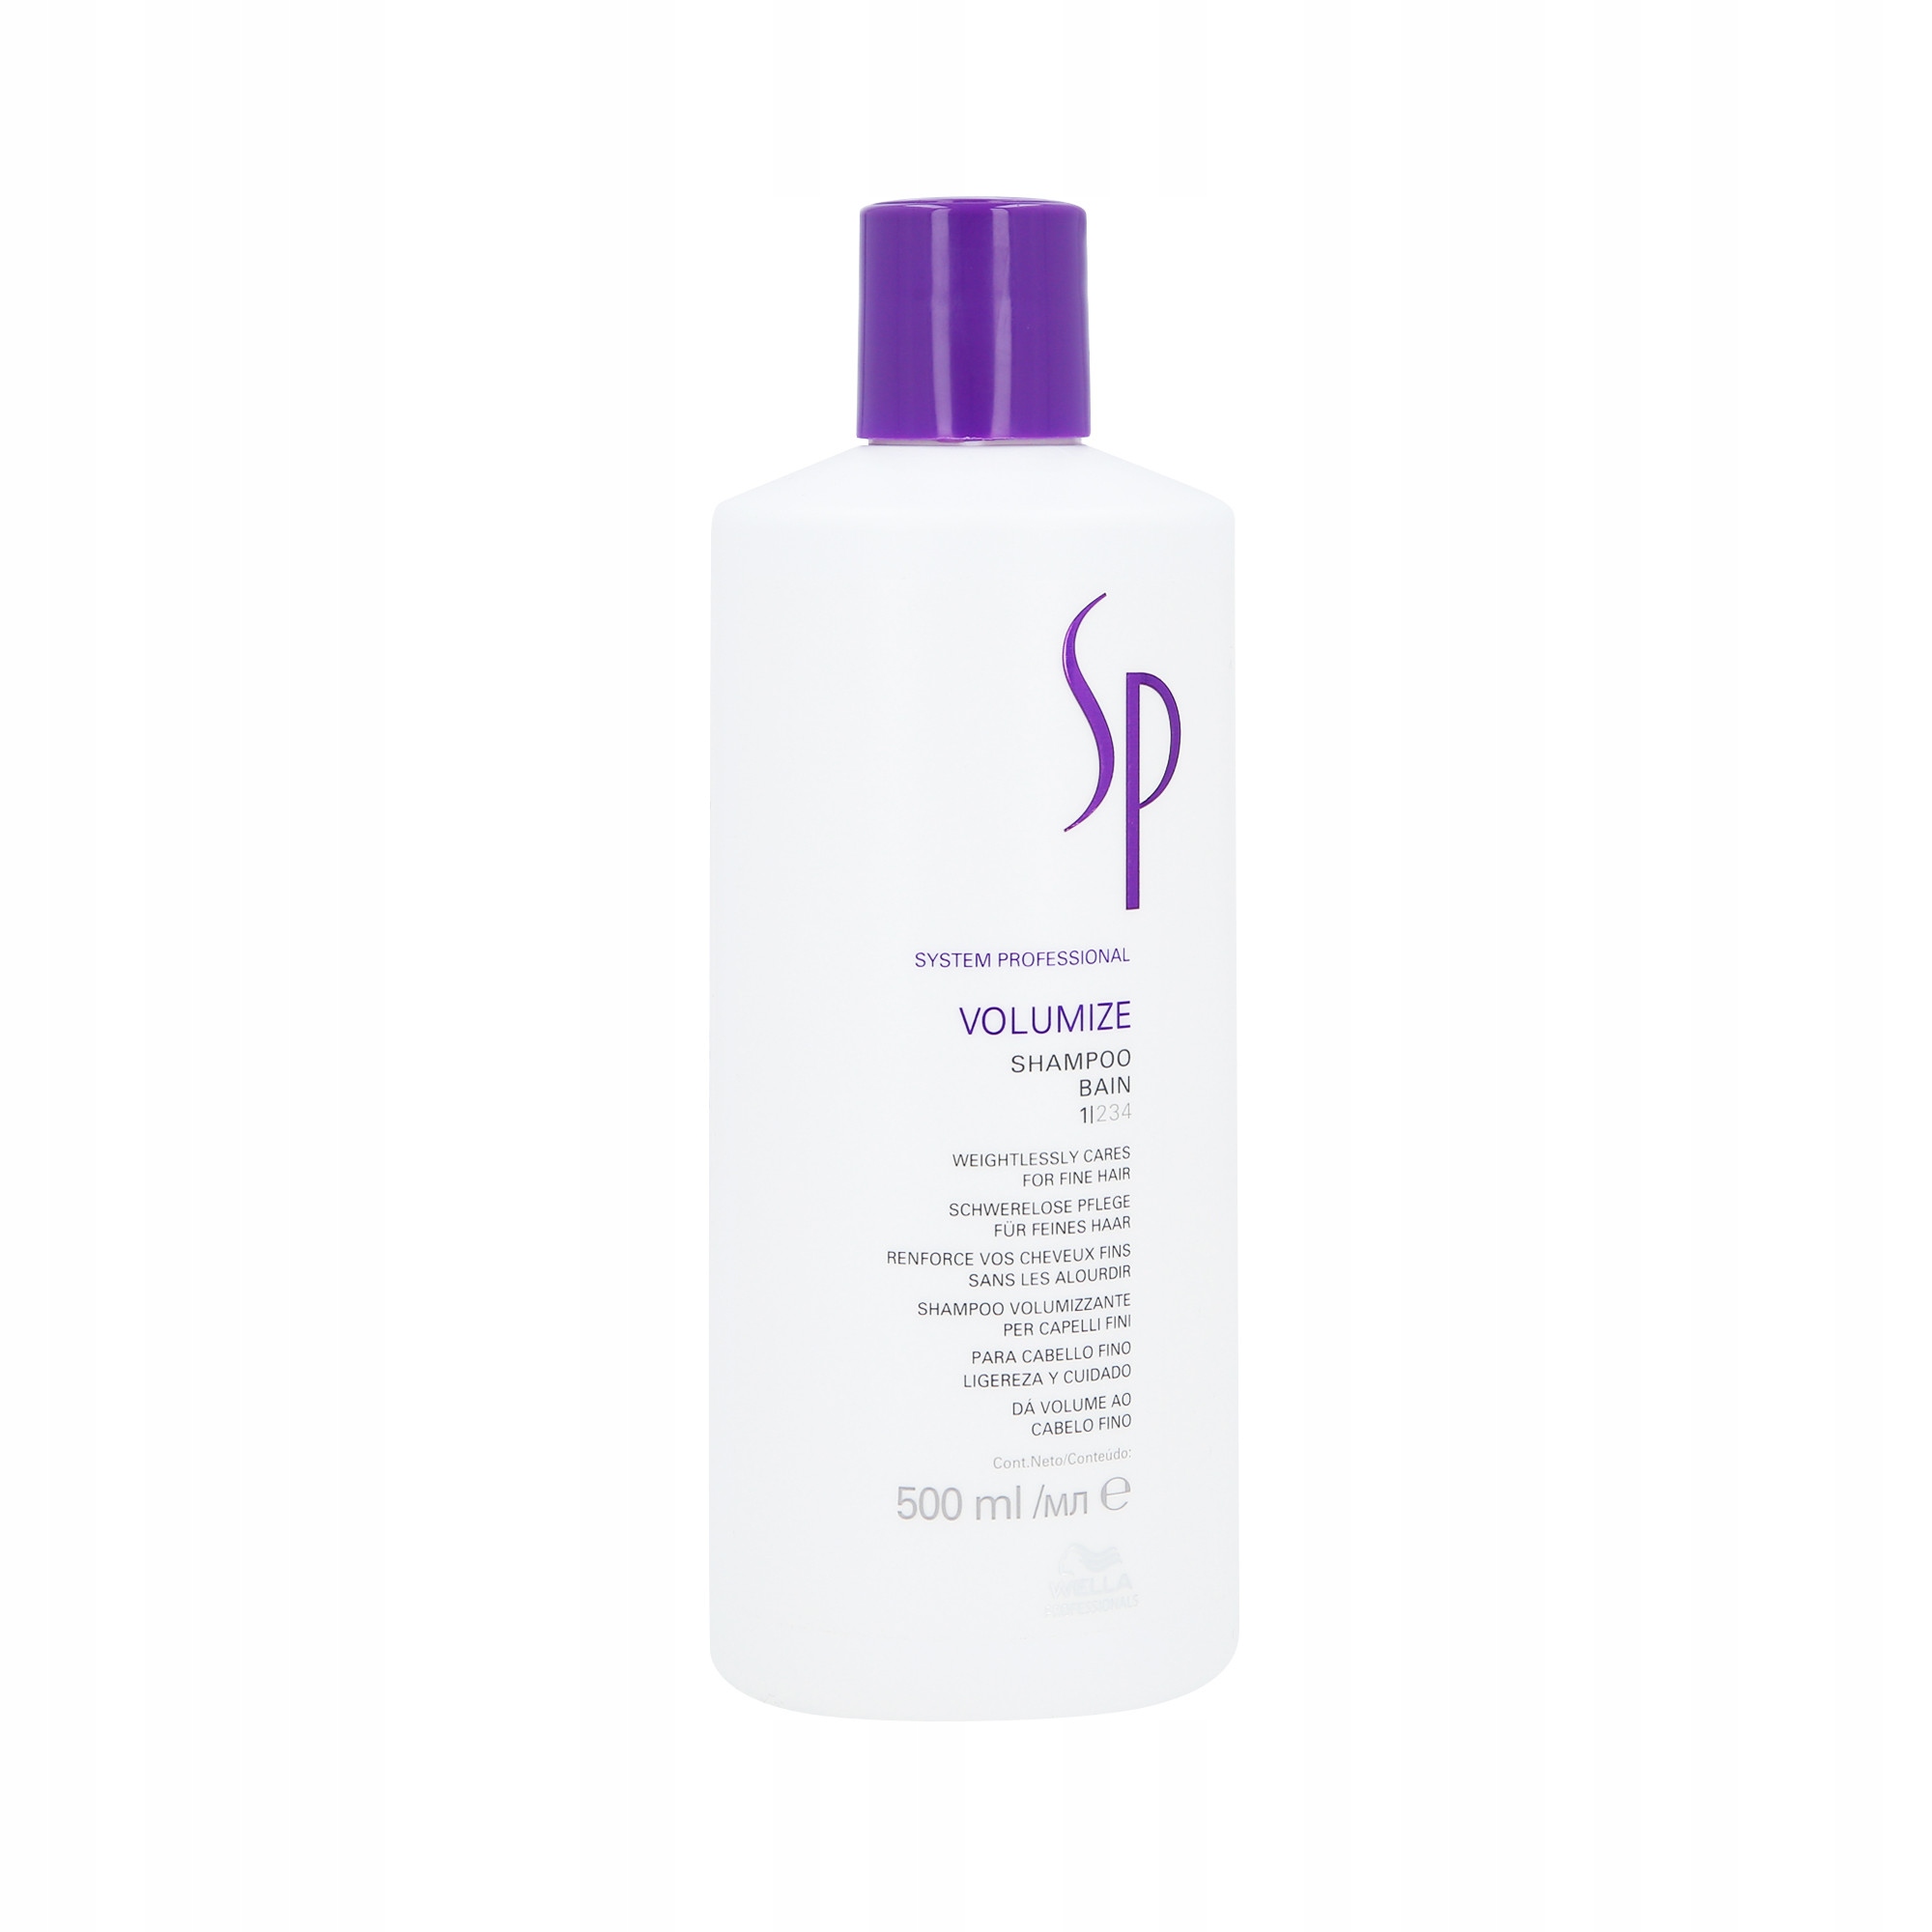 szampon do włosów system professional volumize bain